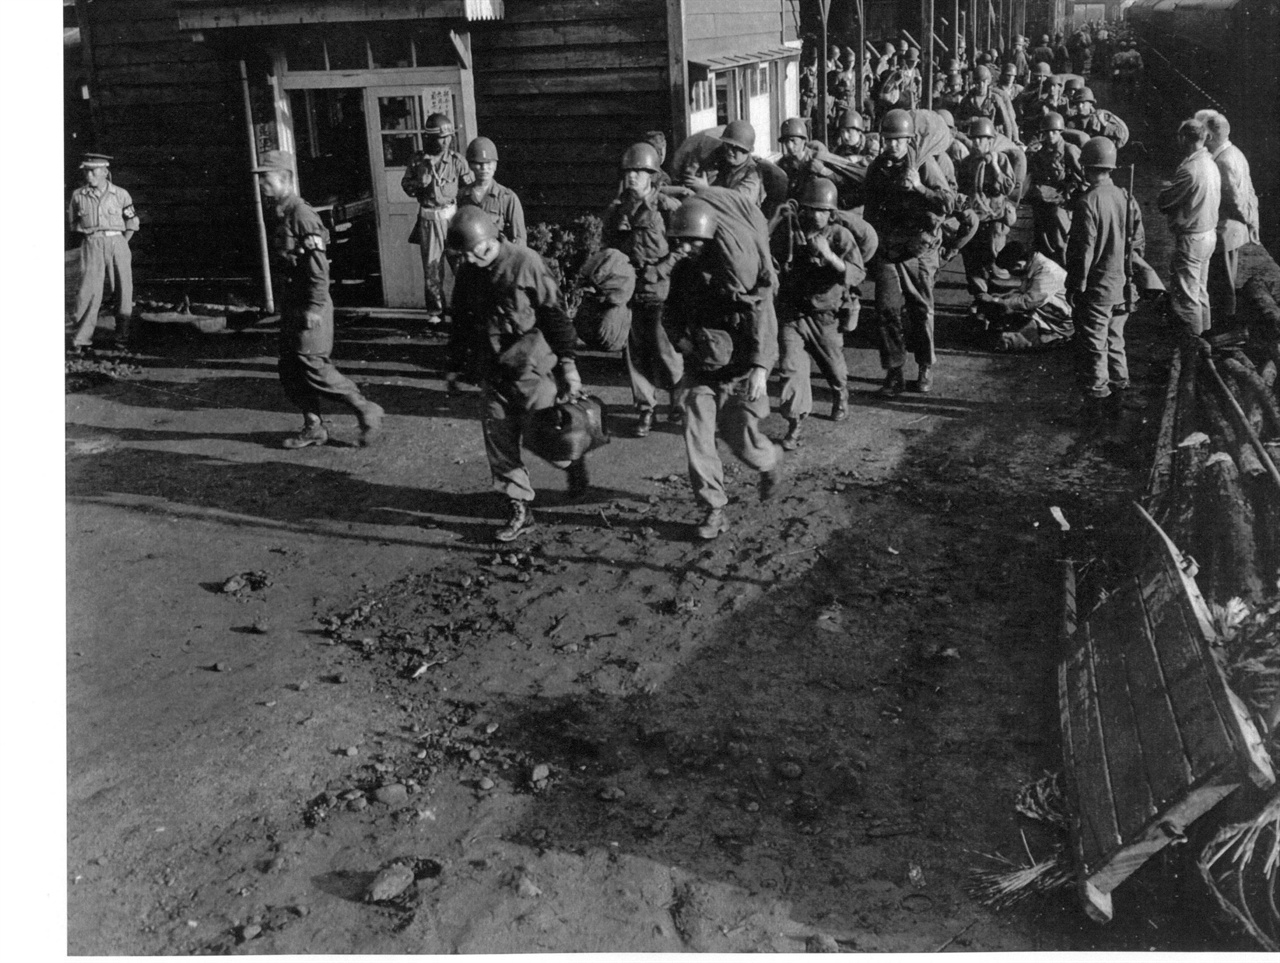  1950. 7. 대전. 한국전쟁이 일어난 후 최초로 도착한 미군 스미스부대가 열차에서 내려 전선(오산)으로 떠나고 있다.